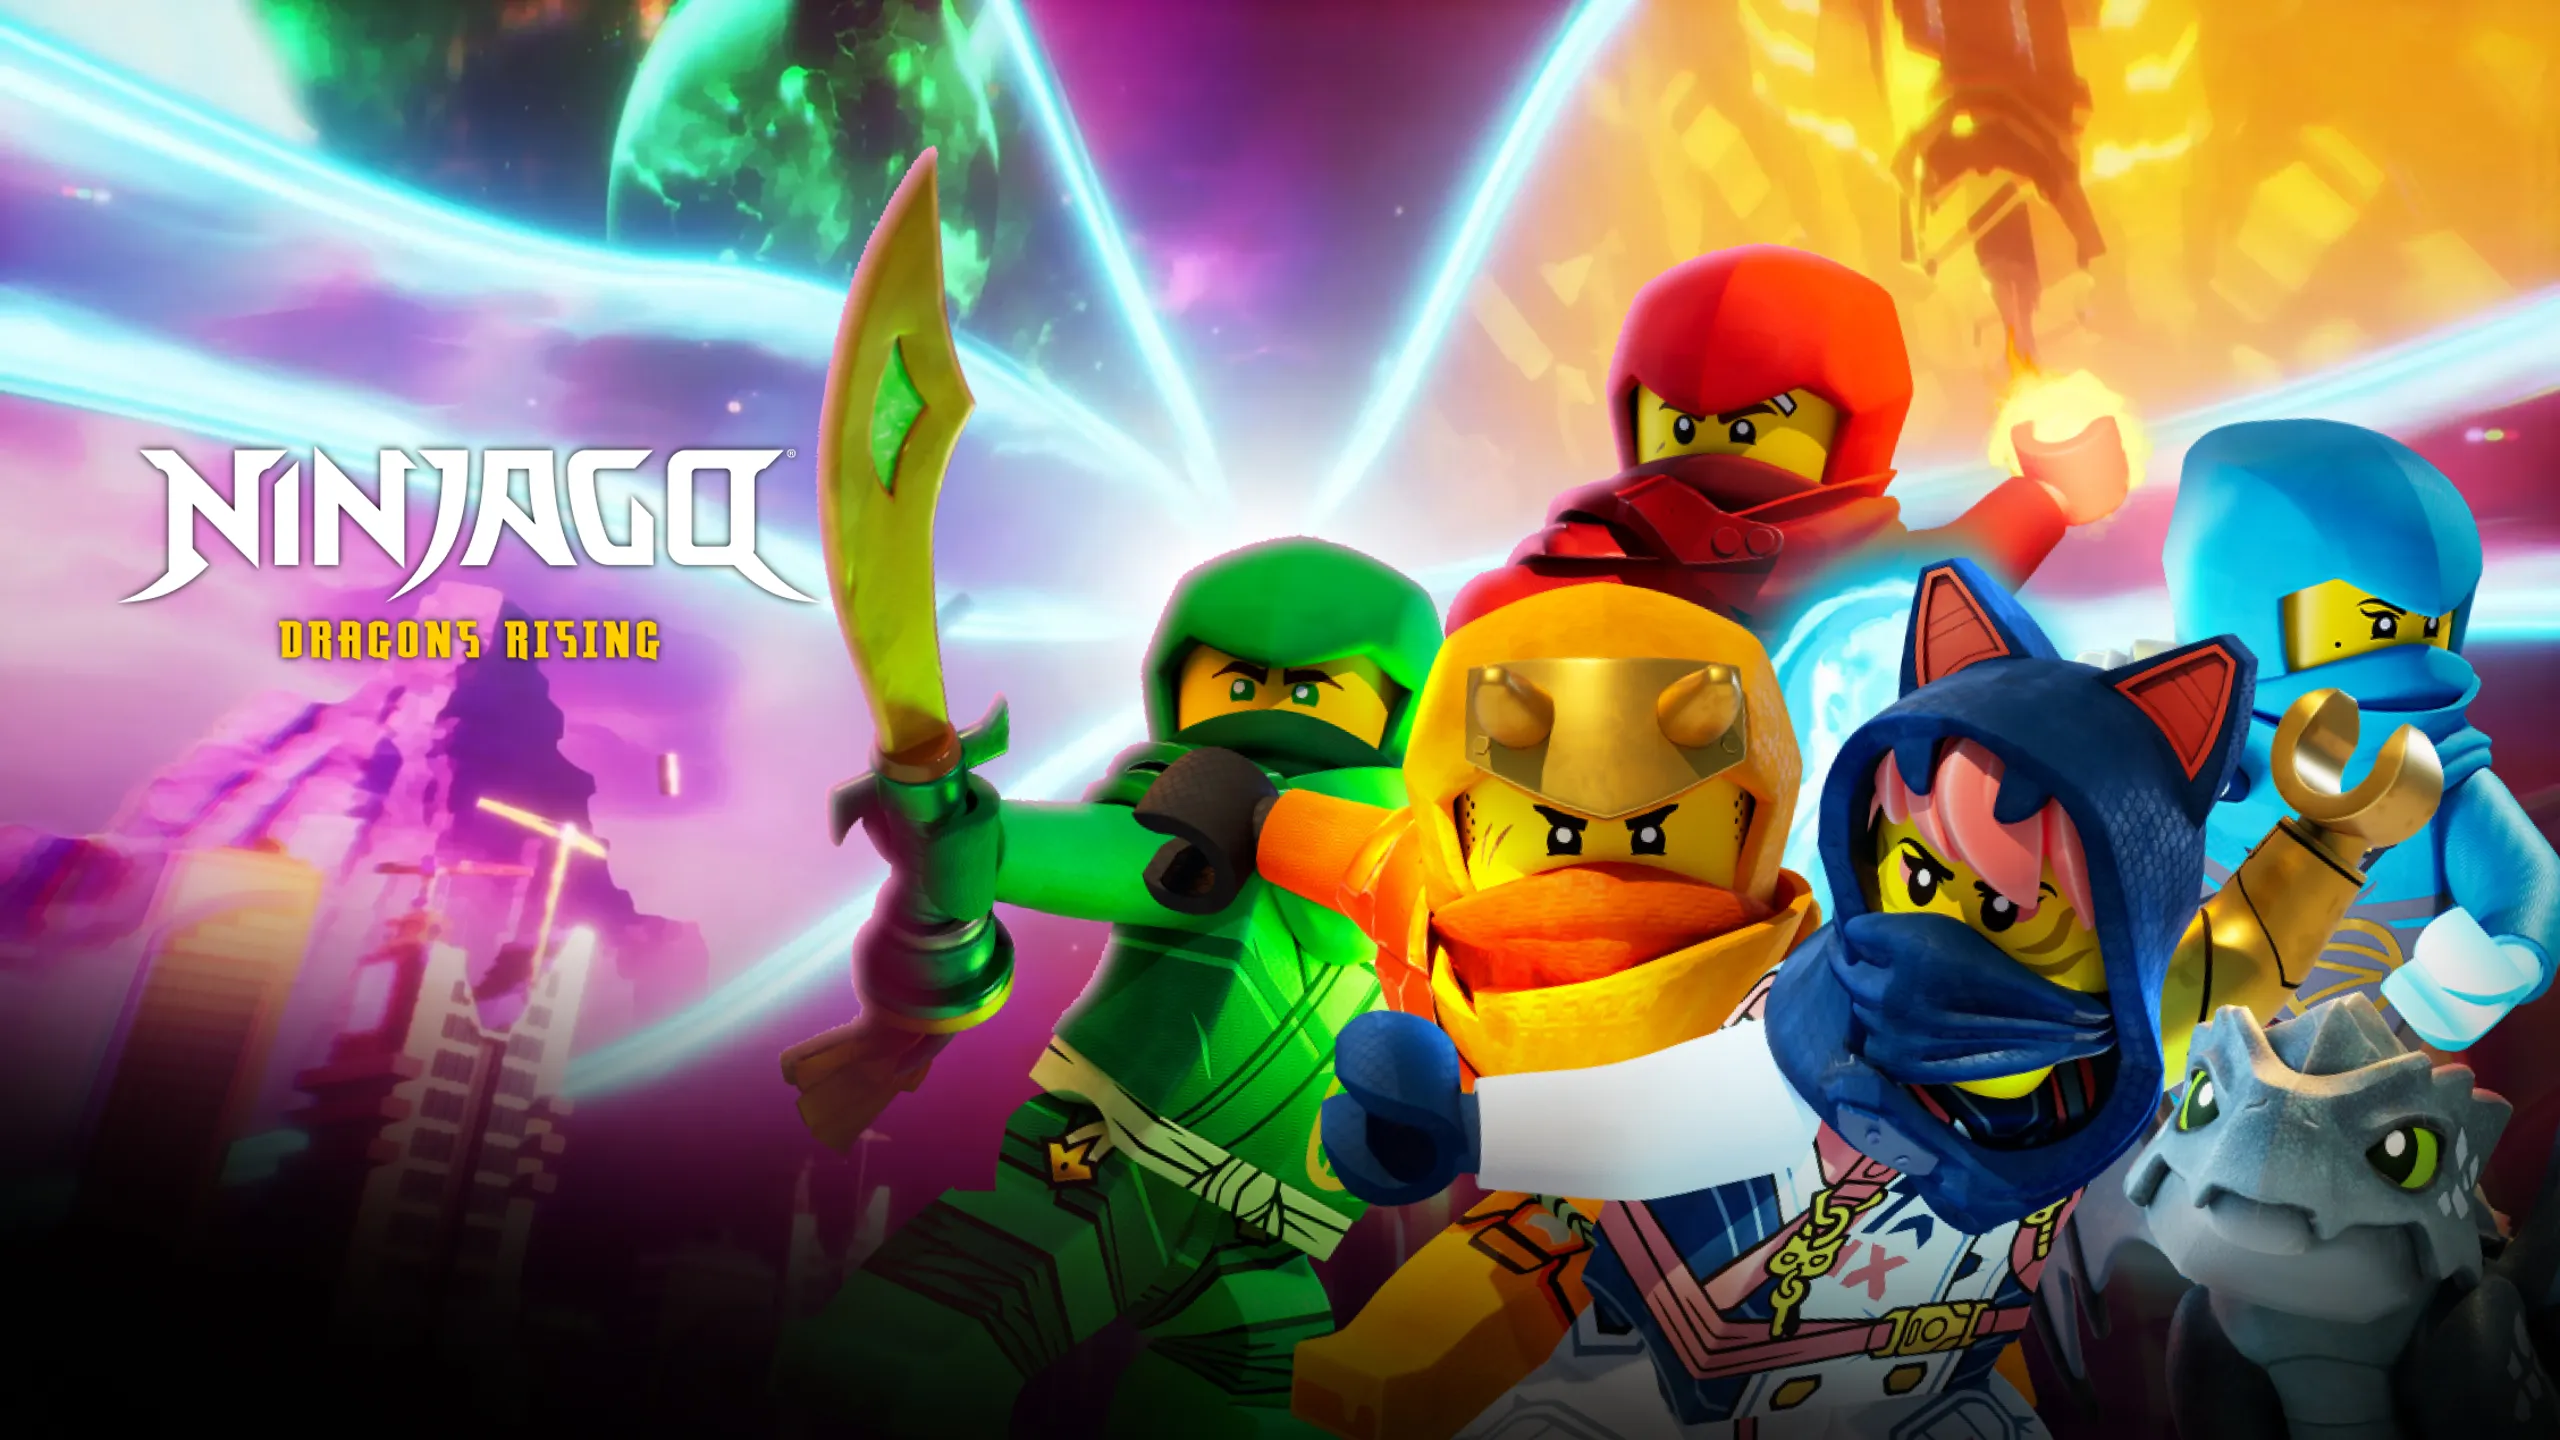 LEGO® Ninjago Dragon's Rising Egalt The Master Dragon Building Set